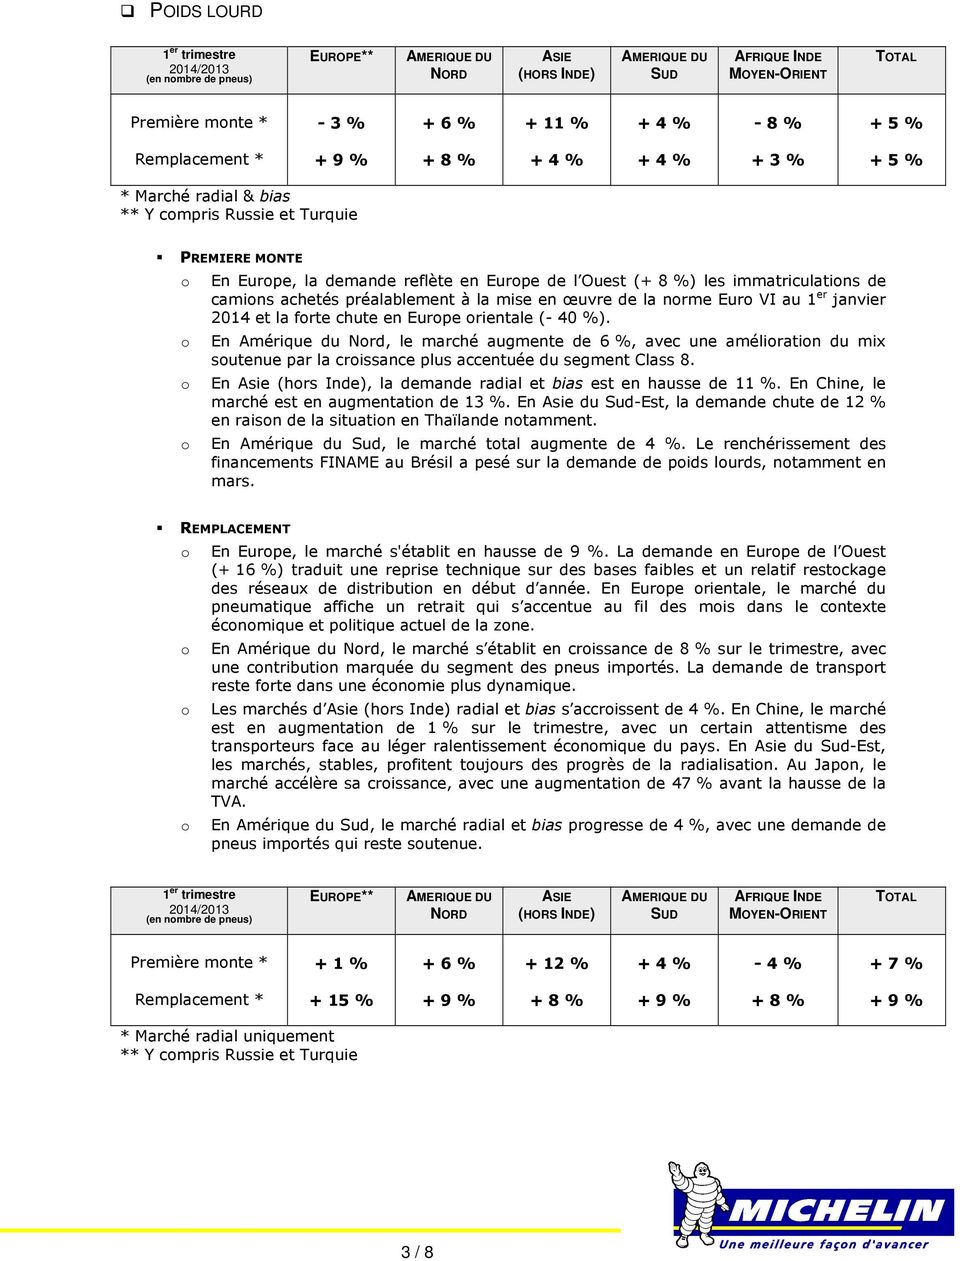 œuvre de la nrme Eur VI au 1 er janvier 2014 et la frte chute en Eurpe rientale (- 40 %).